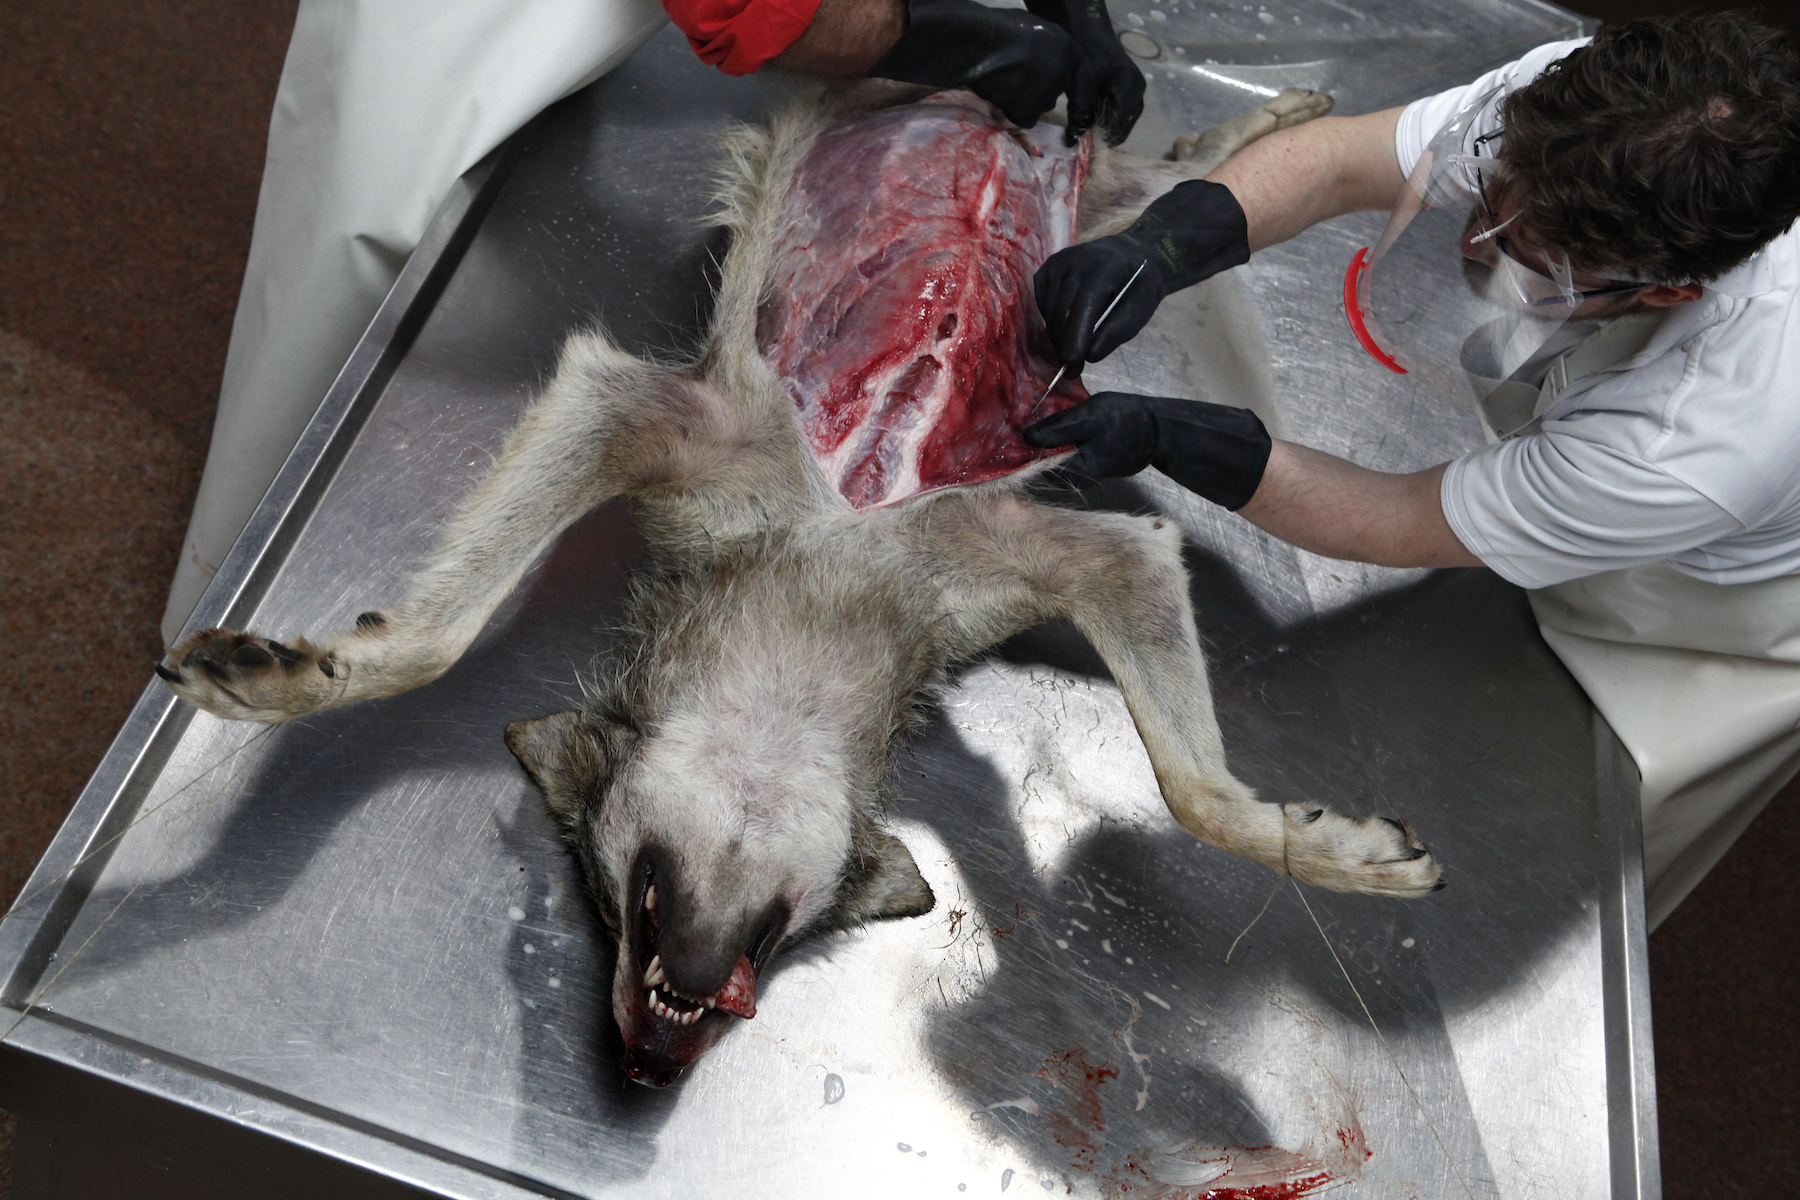 Seorang laki-laki melakukan autopsi pada bangkai serigala yang tubuhnya telah dibelek.